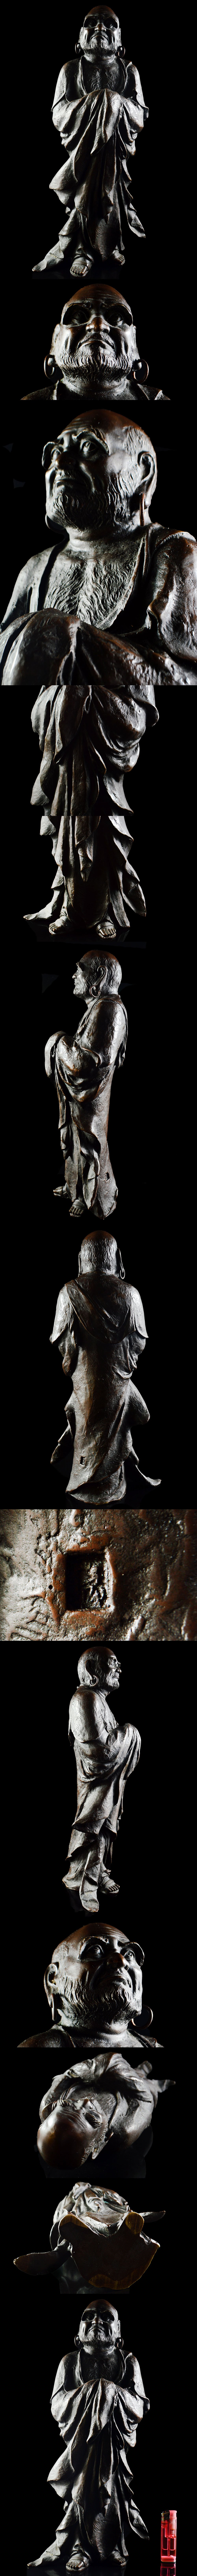 日本製造廃寺買取品 仏教美術 達磨大師立像 置物 重さ7.75kg 古美術品(だるま旧家蔵出)A973 UTqaaib その他